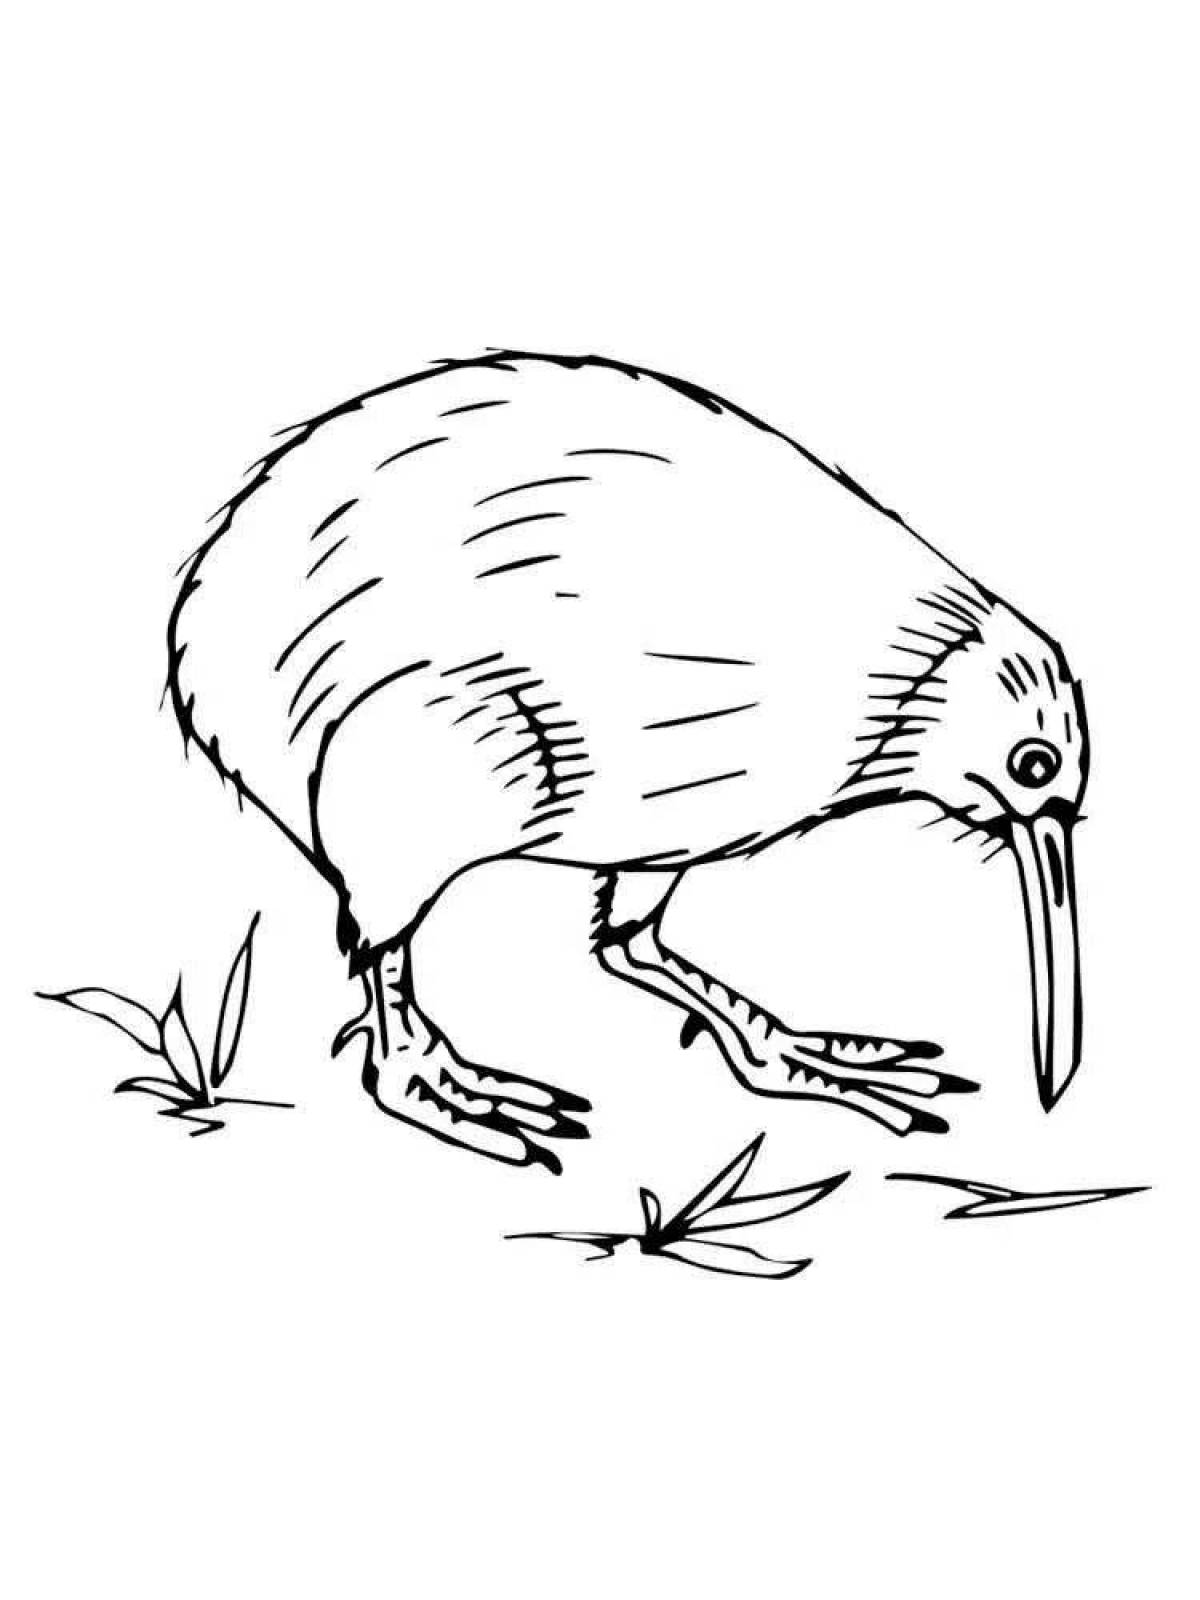 Joyful kiwi bird coloring book